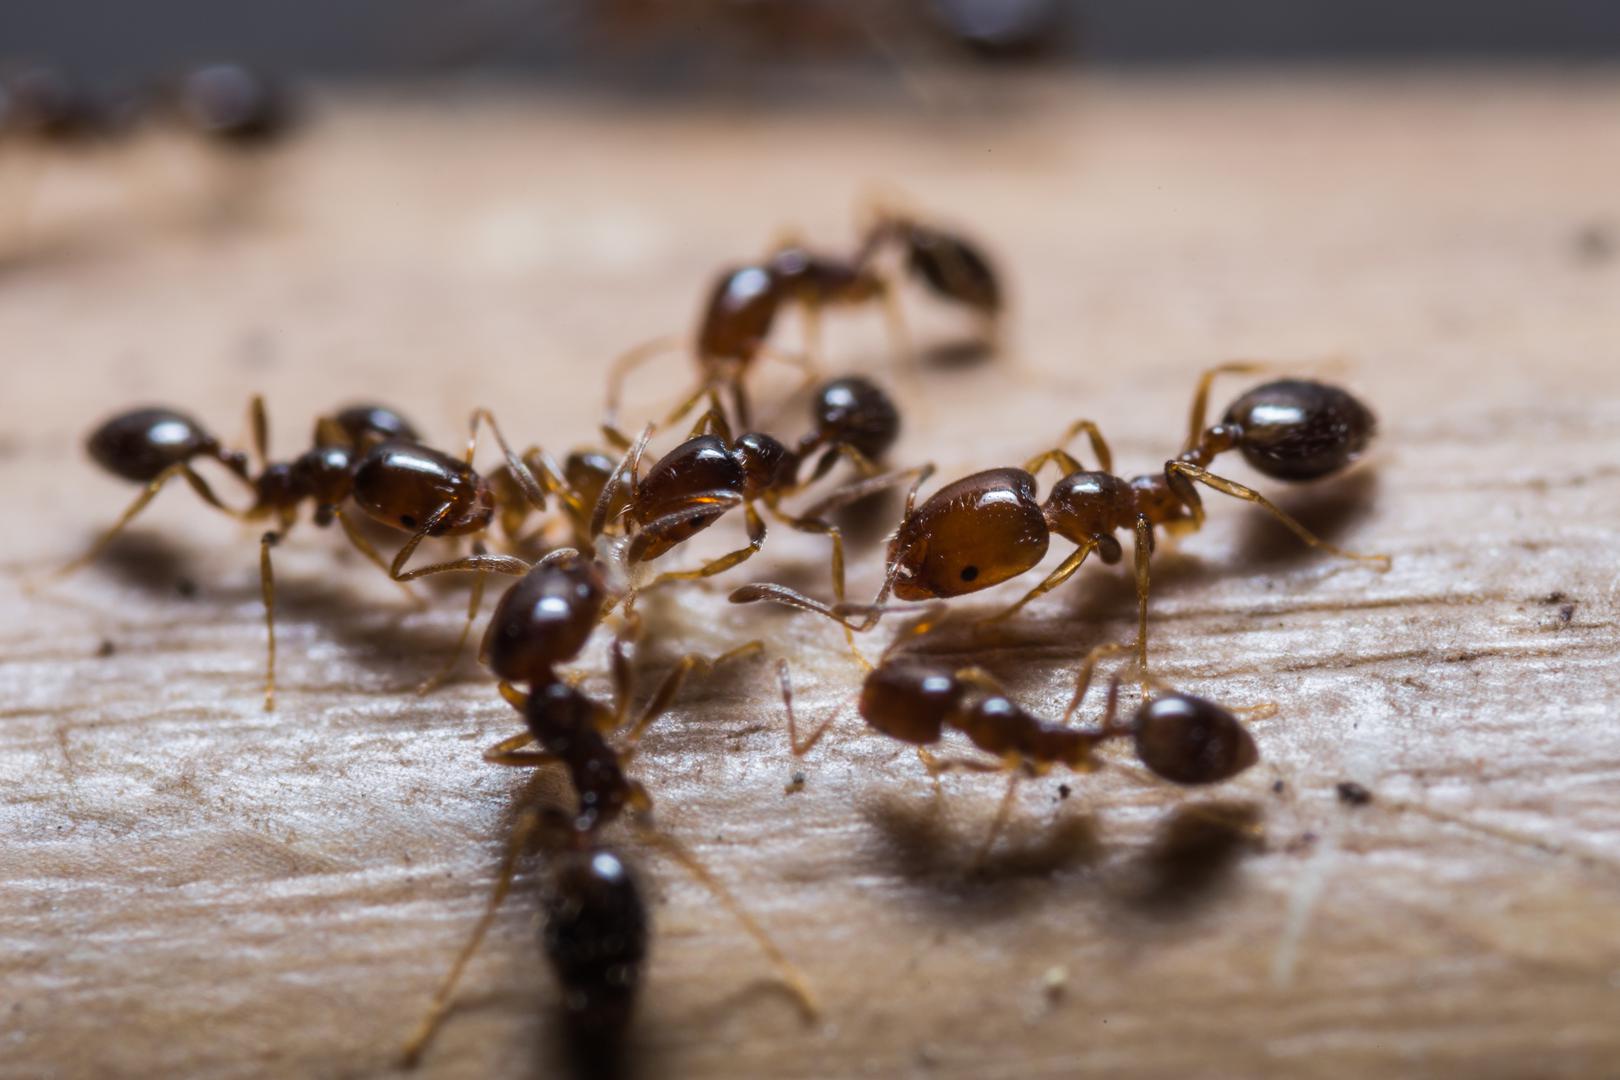 Mravi ne podnose limunsku kiselinu pa je odličan način da ih se riješite taj da pukotine u zidovima, otvore od ventilacija, štokove vrata i prozora ili područje za koje sumnjate da je njihov ulaz u vaš dom poprskate sokom od limuna.